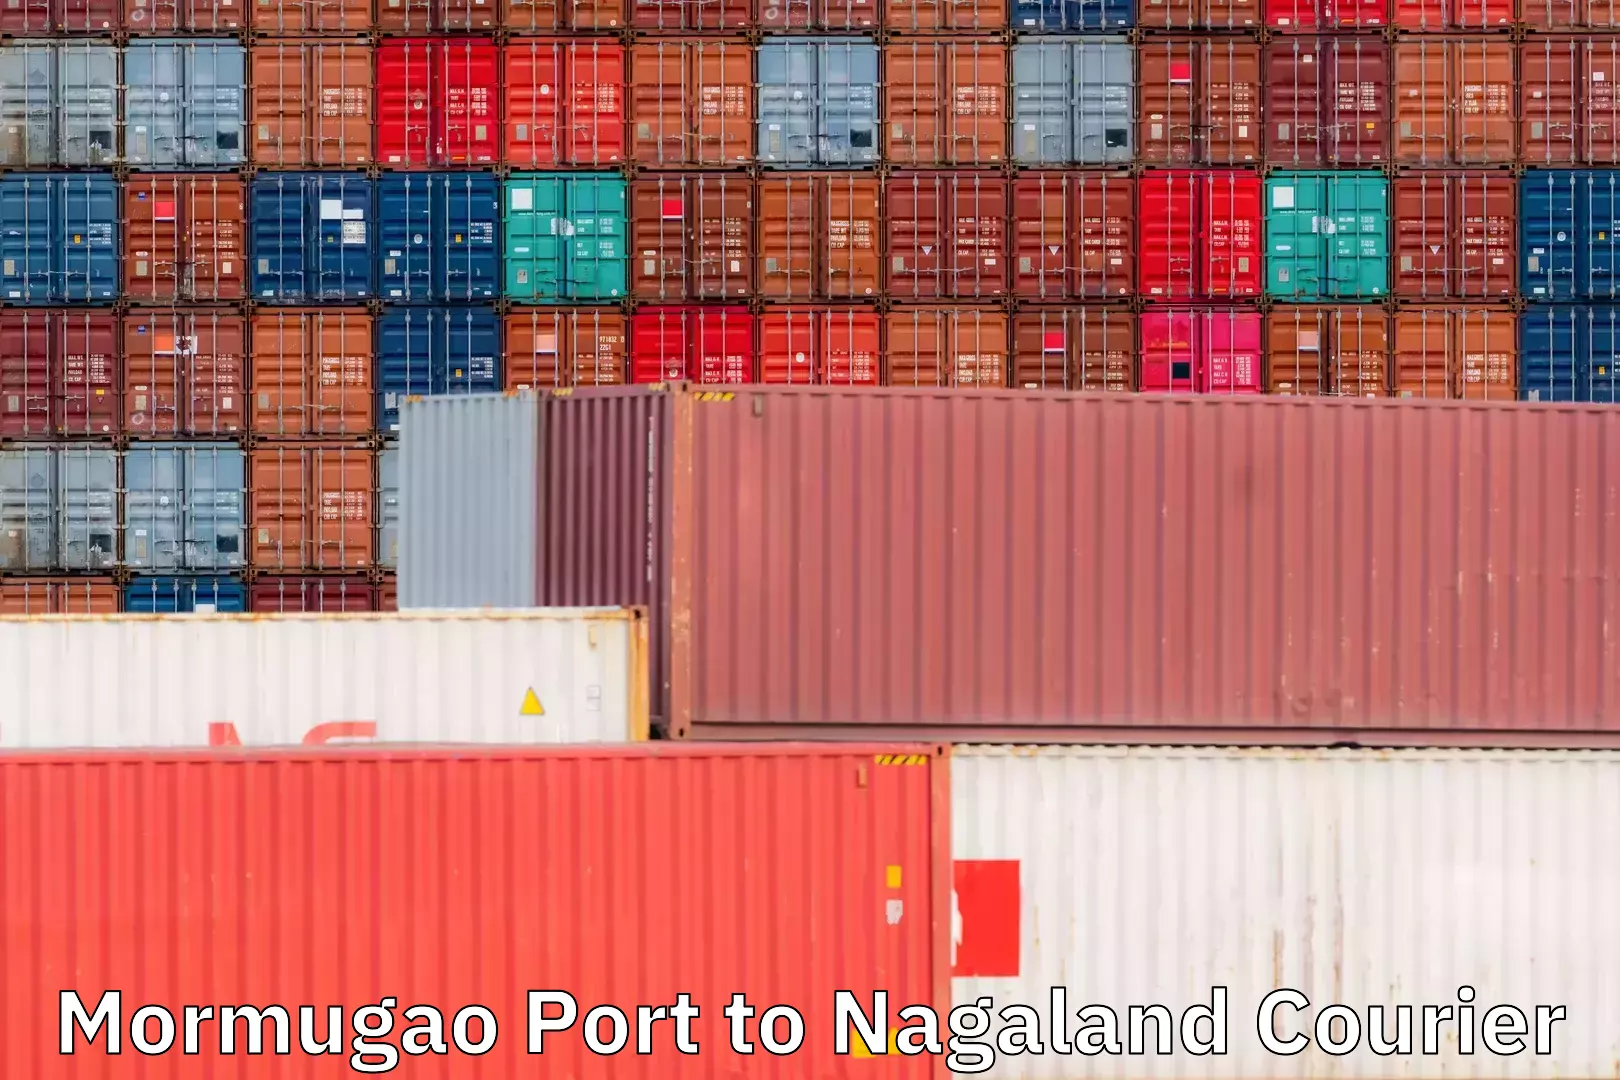 Ocean freight courier Mormugao Port to Nagaland